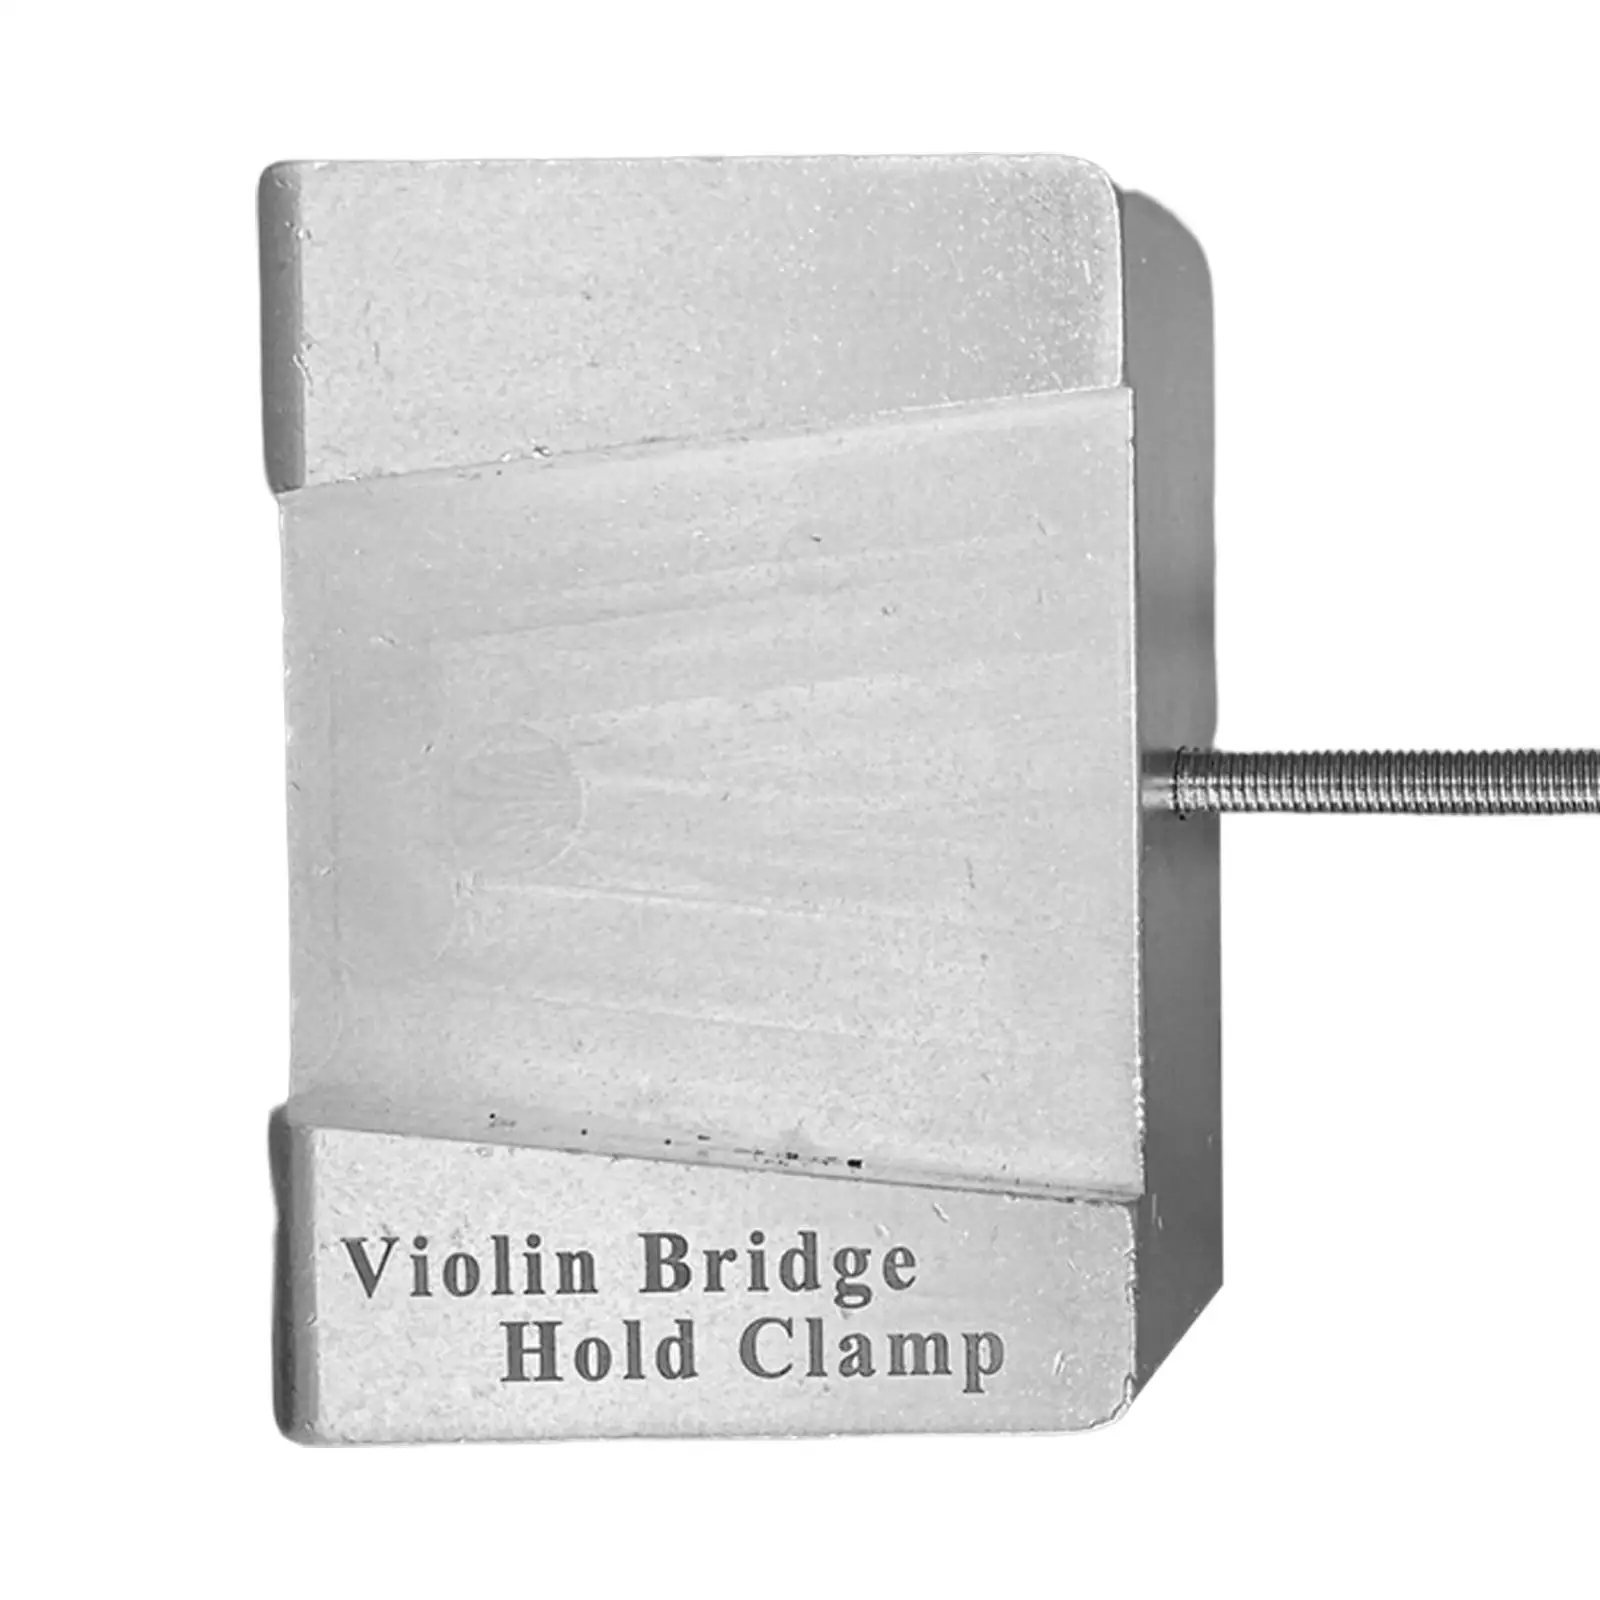 Duarable Violin Bridge Holder Clamp Violin Tool Violin Parts Guitar Repair Tools